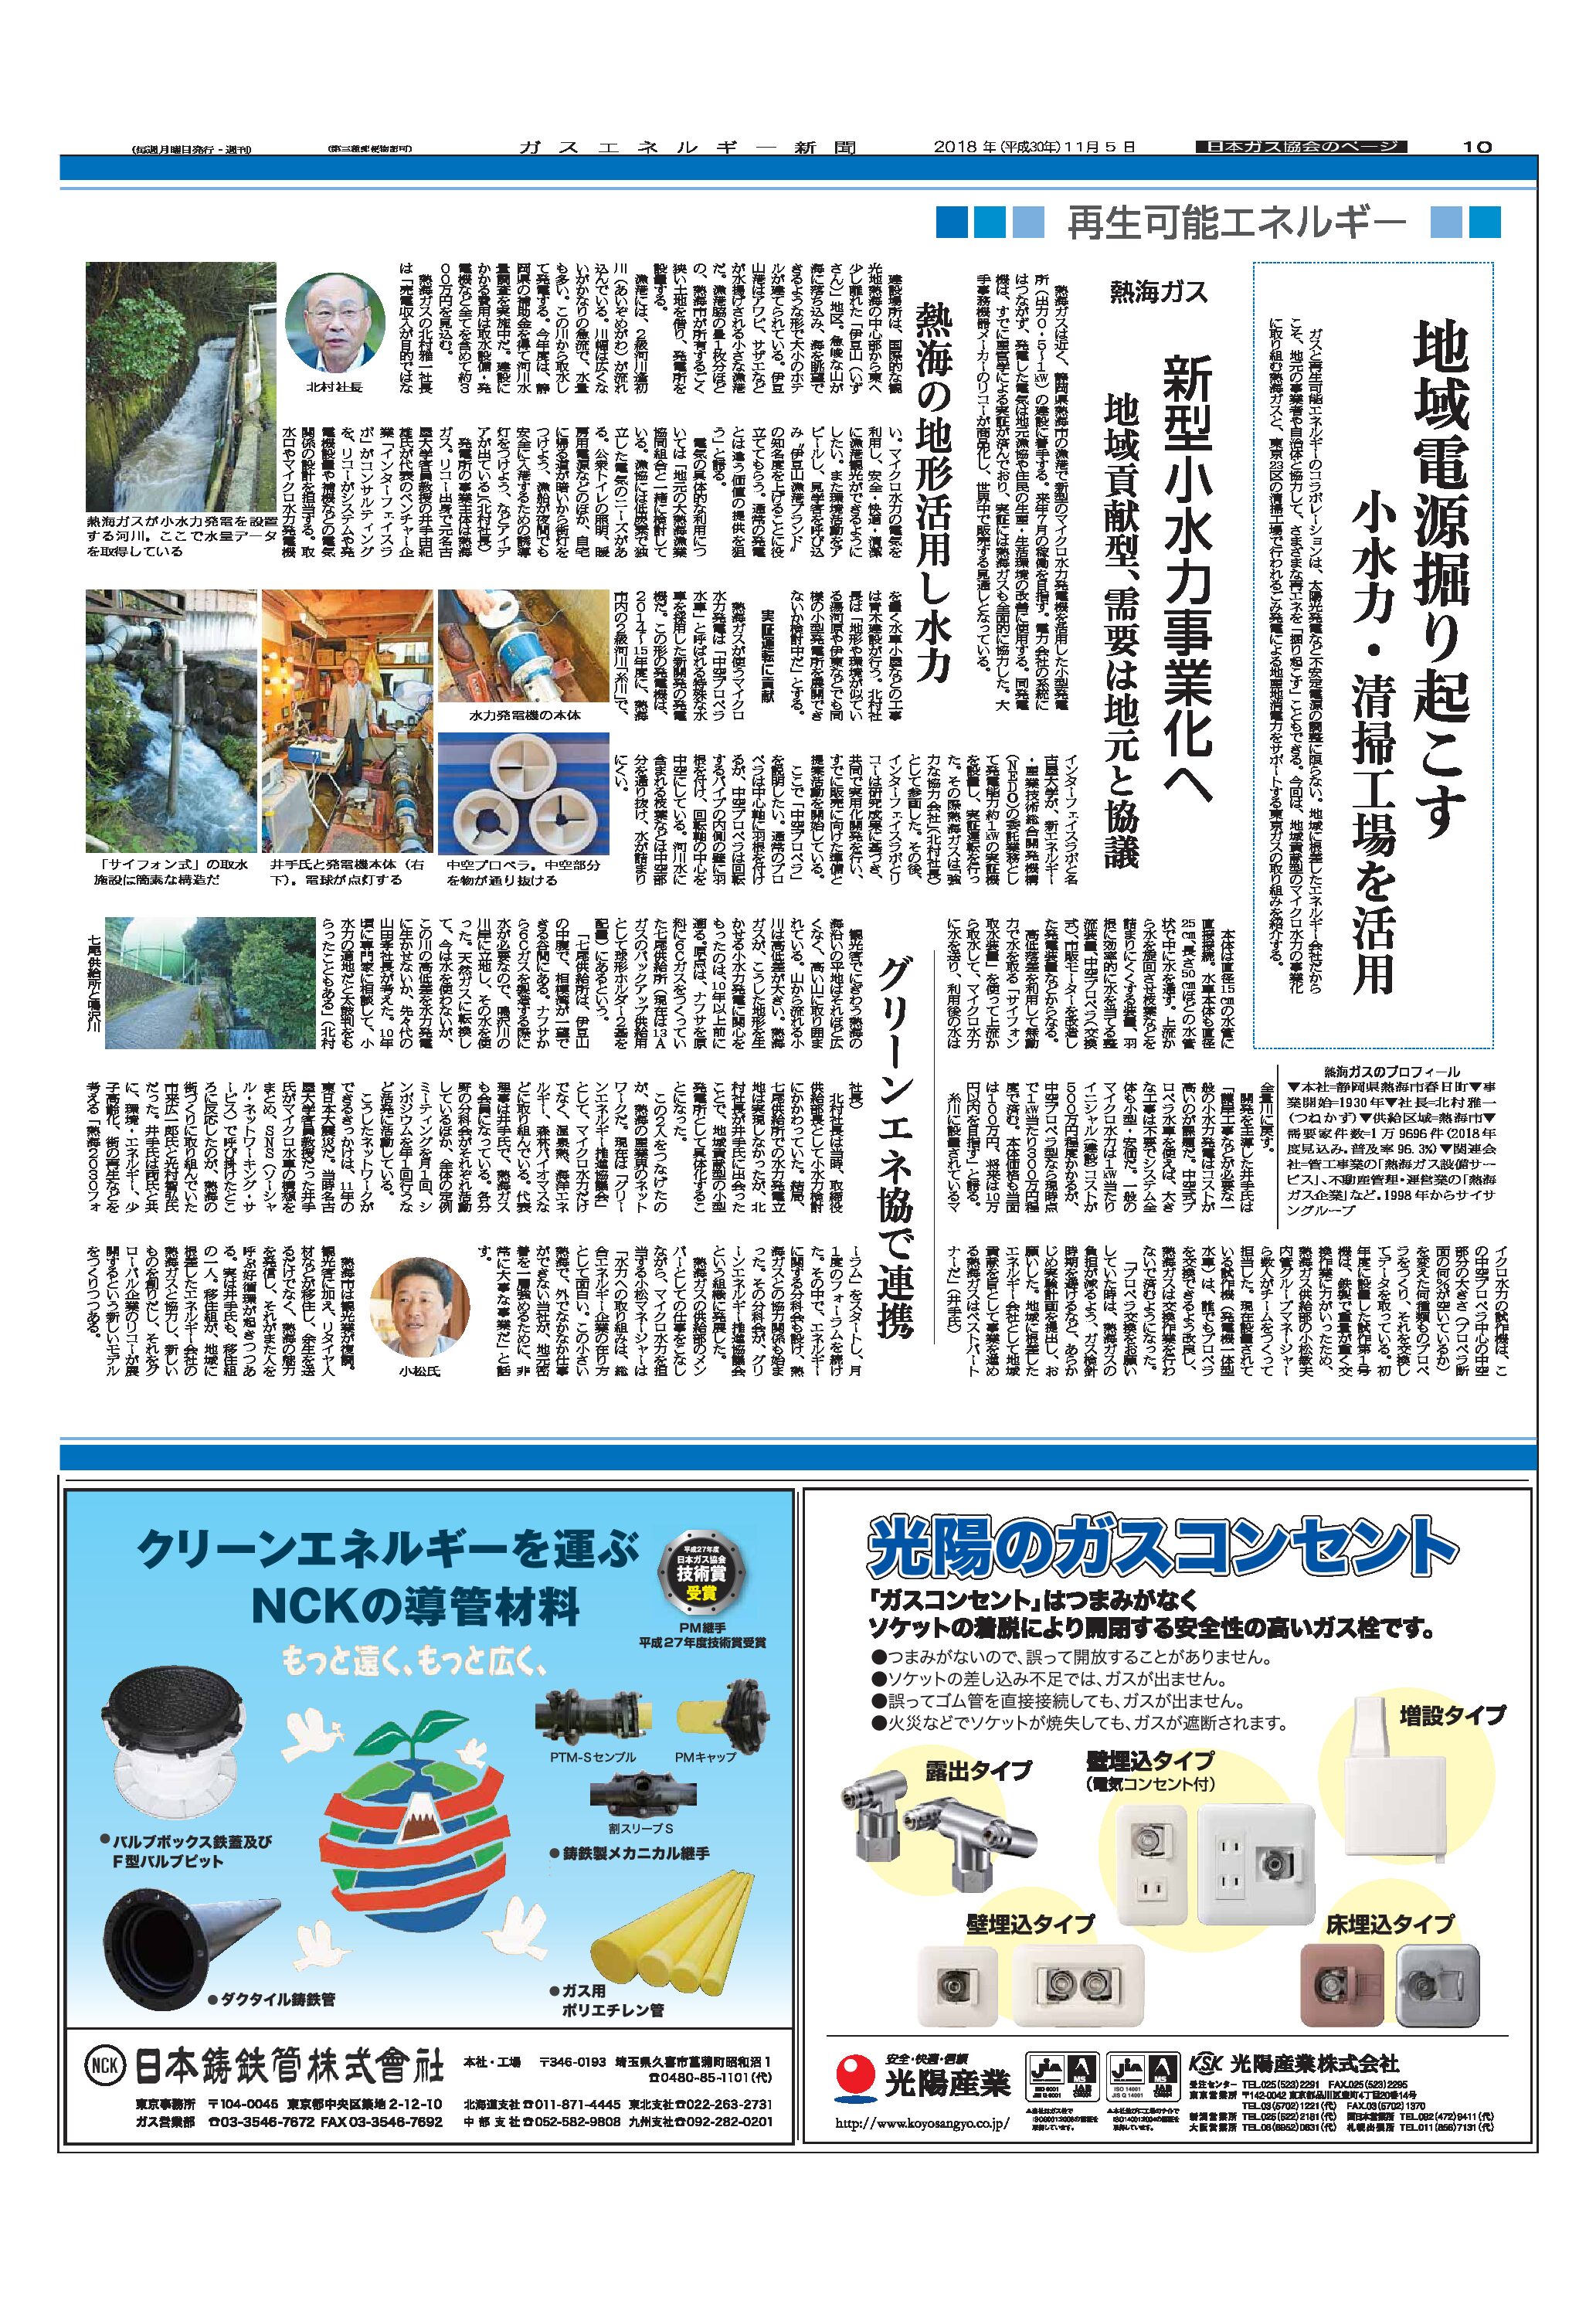 【日本ガス協会のページ】「再生可能エネルギー/地域電源掘り起こす　小水力・清掃工場を活用」熱海ガス(事例1)